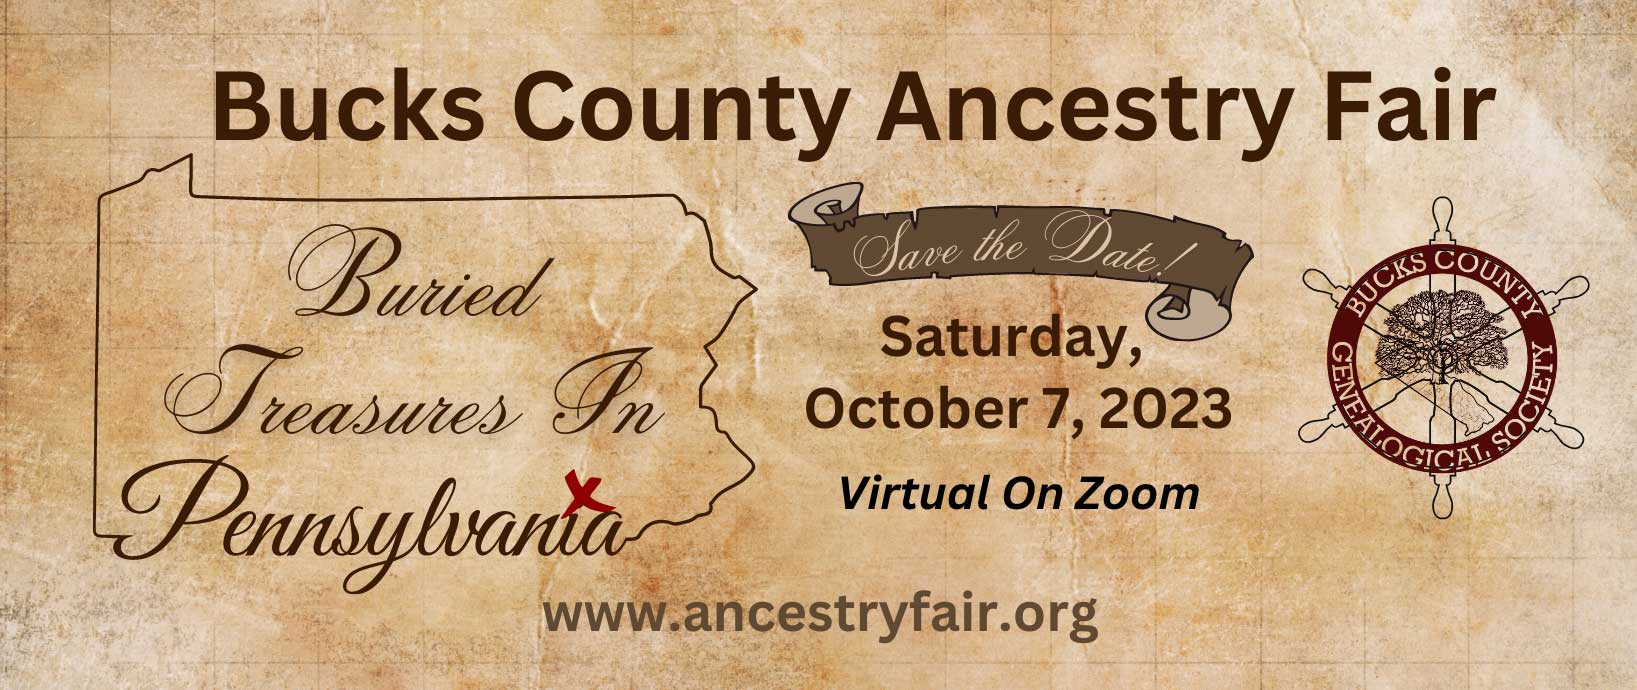 Bucks County Ancestry Fair